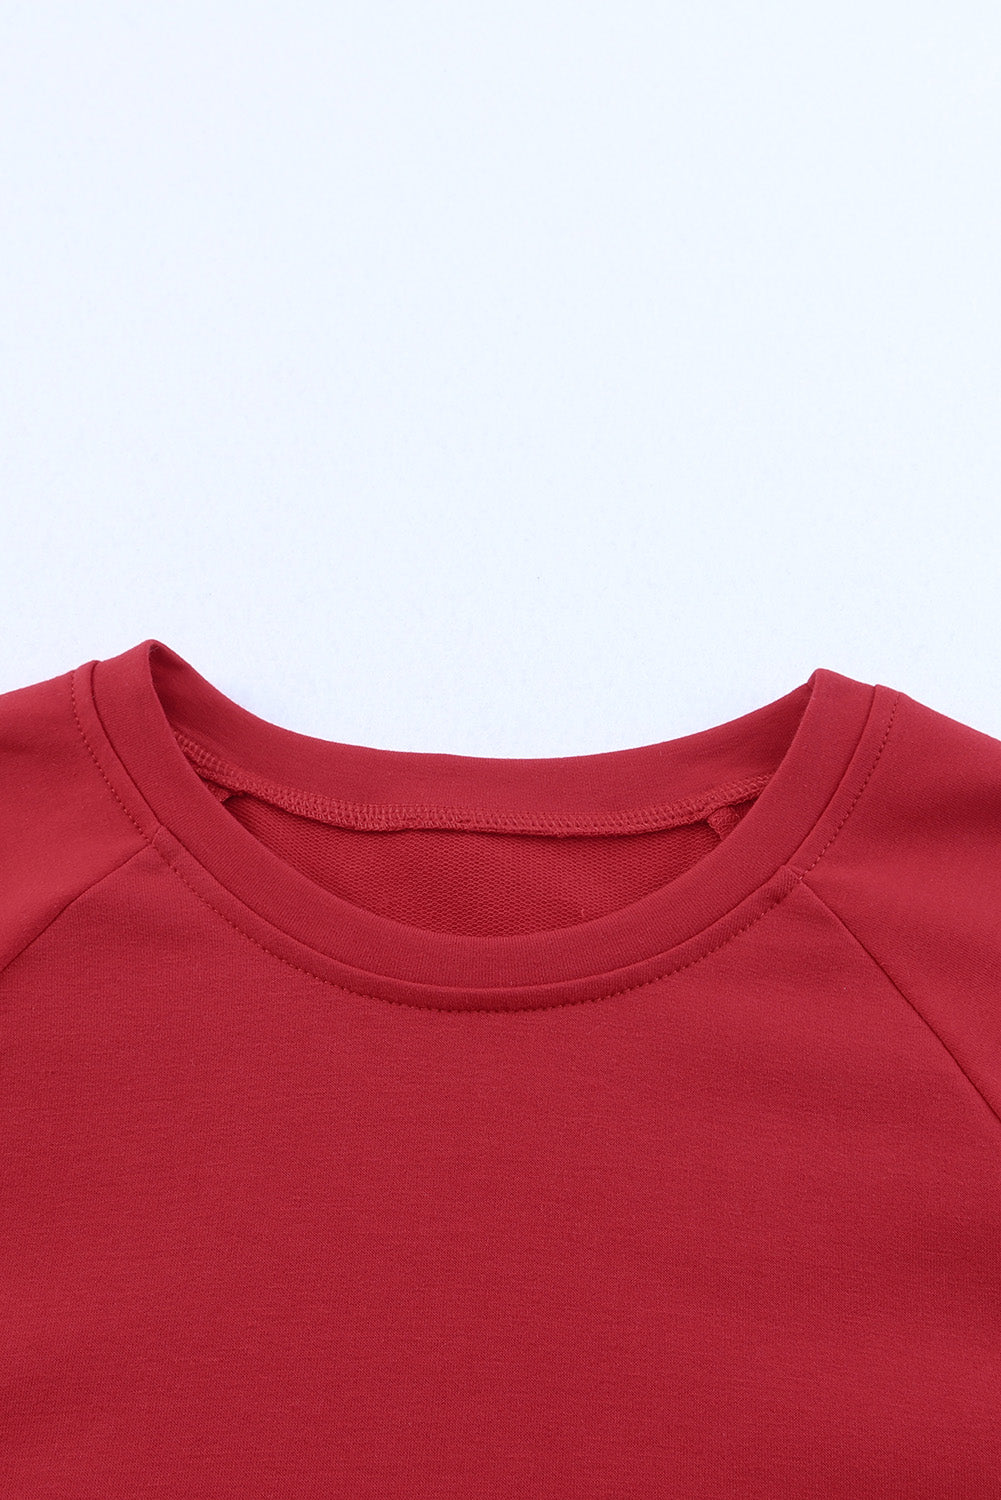 Sweat-shirt à manches raglan et col rond uni rouge vif